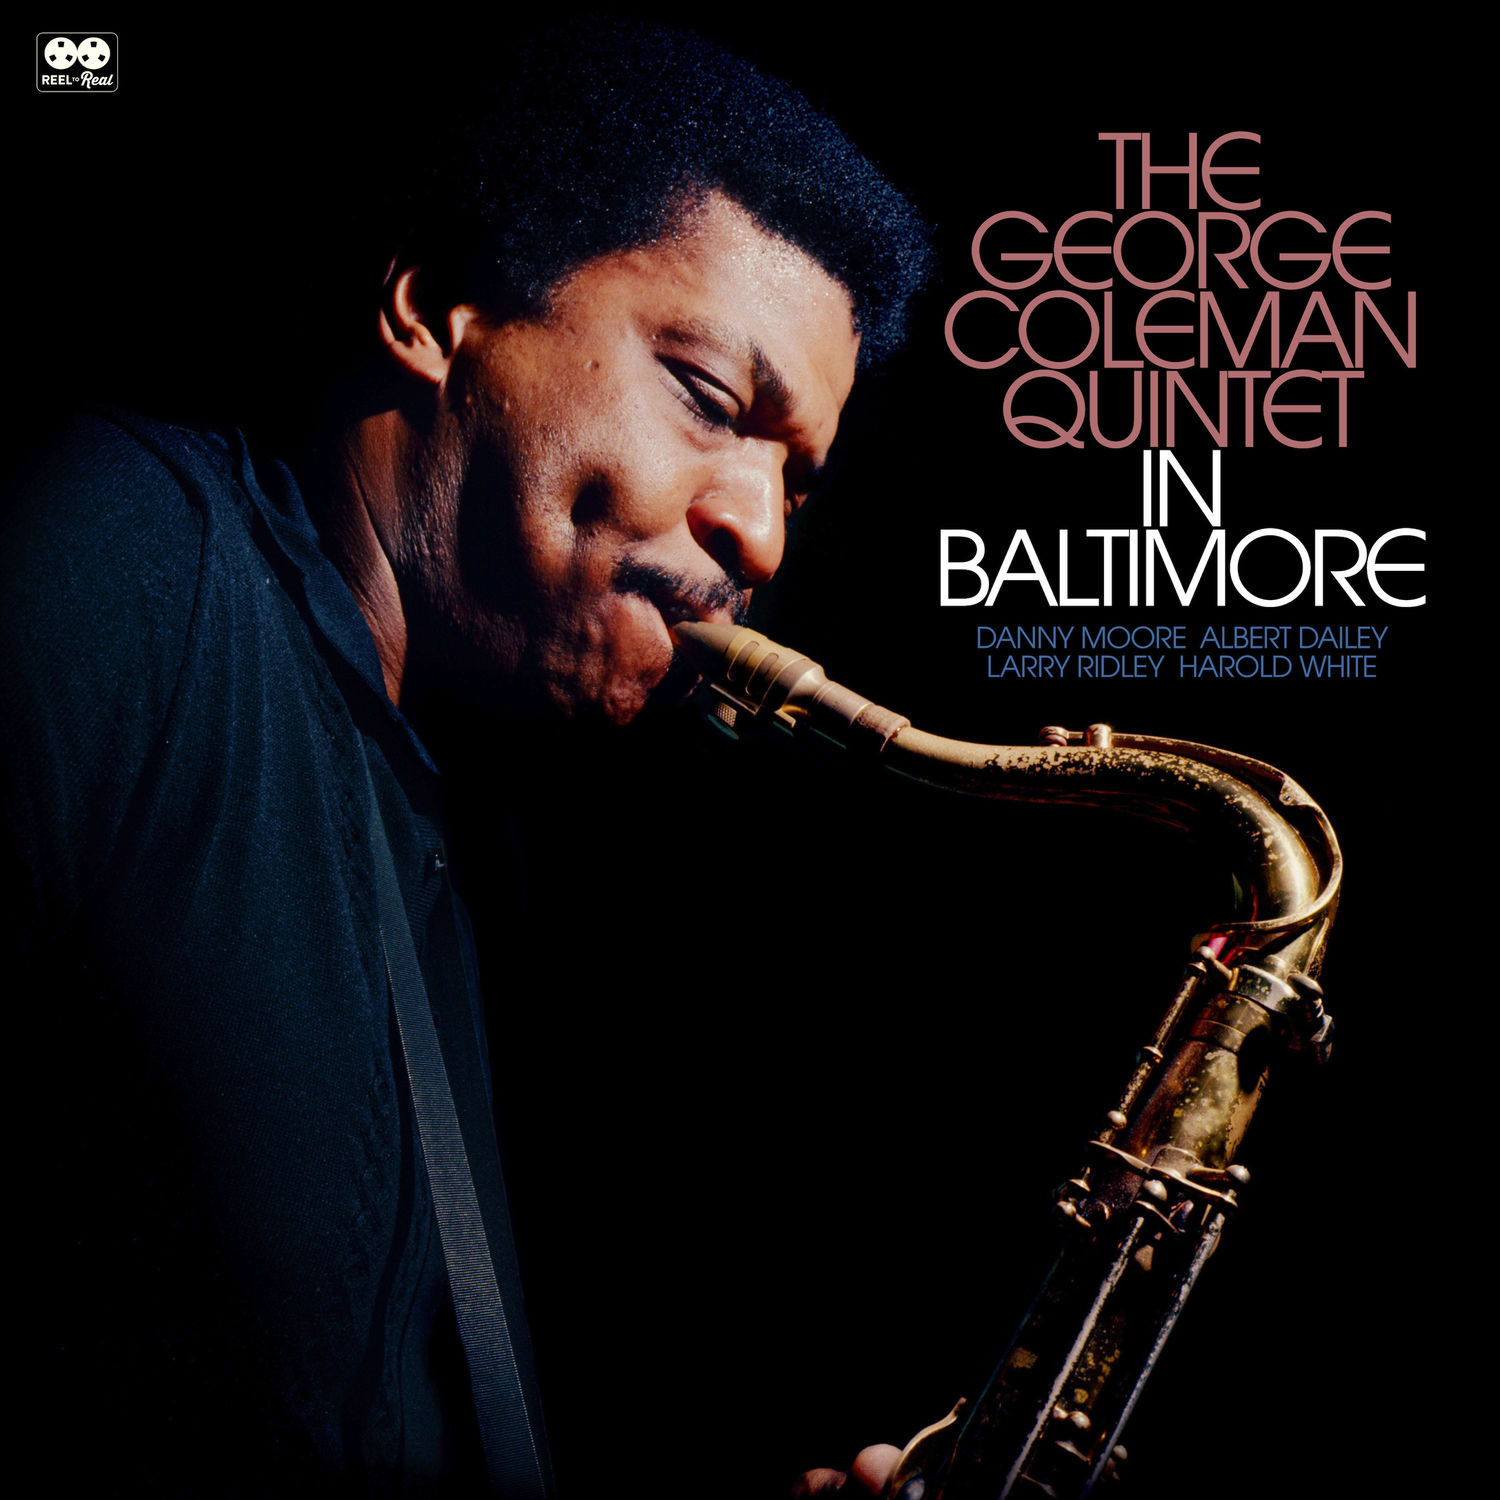 George Coleman Quintet – The George Colman Quintet in Baltimore (2020) [FLAC 24bit/96kHz]